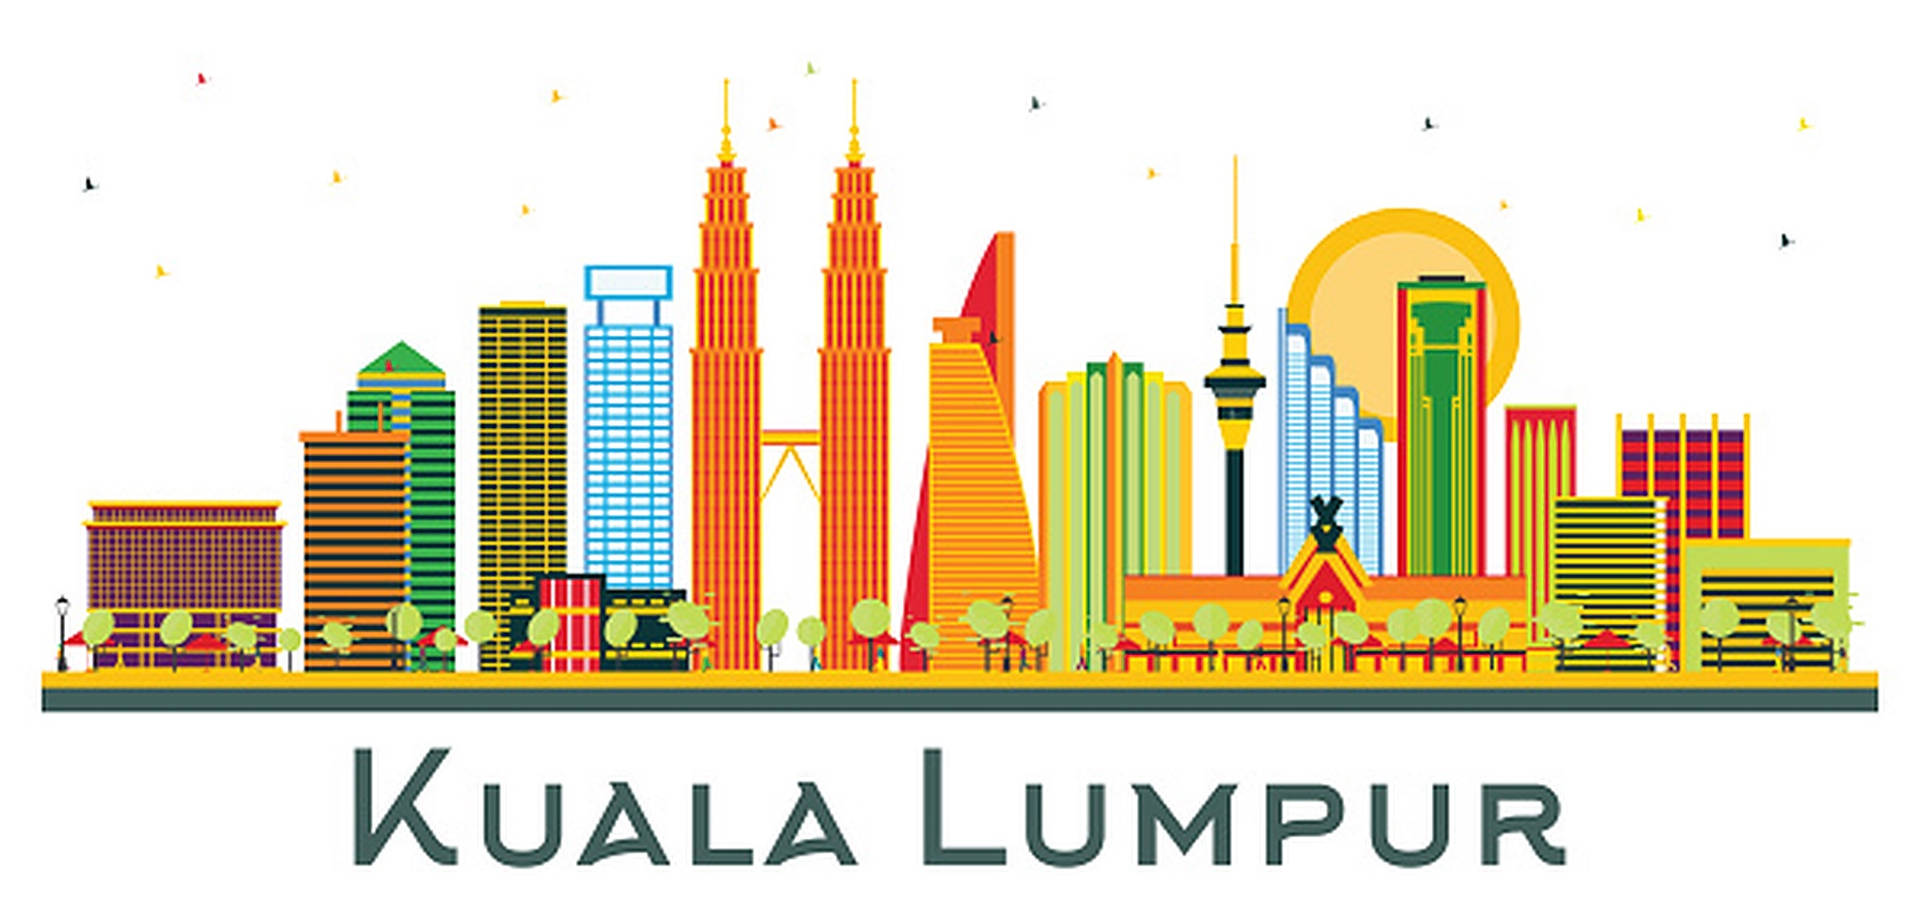 Kuala Lumpur Graphic Art Background